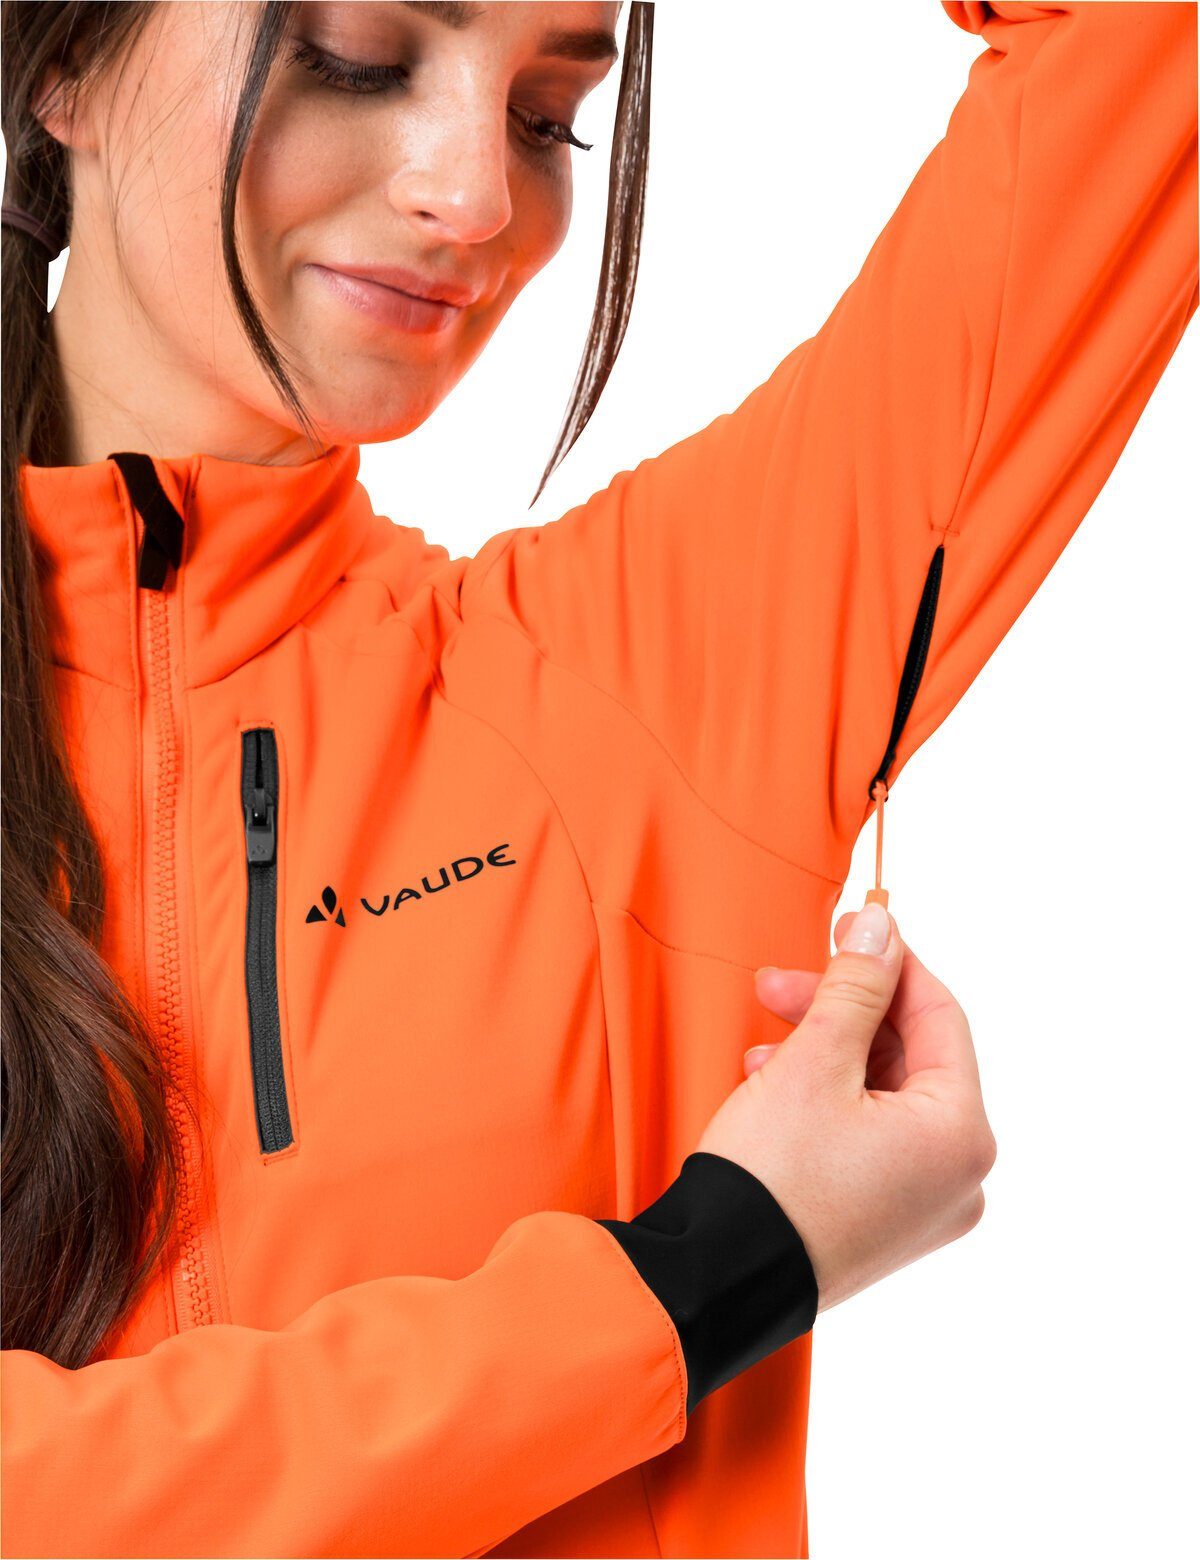 VAUDE Outdoorjacke Women's Posta Softshell kompensiert Jacket orange neon Klimaneutral (1-St)